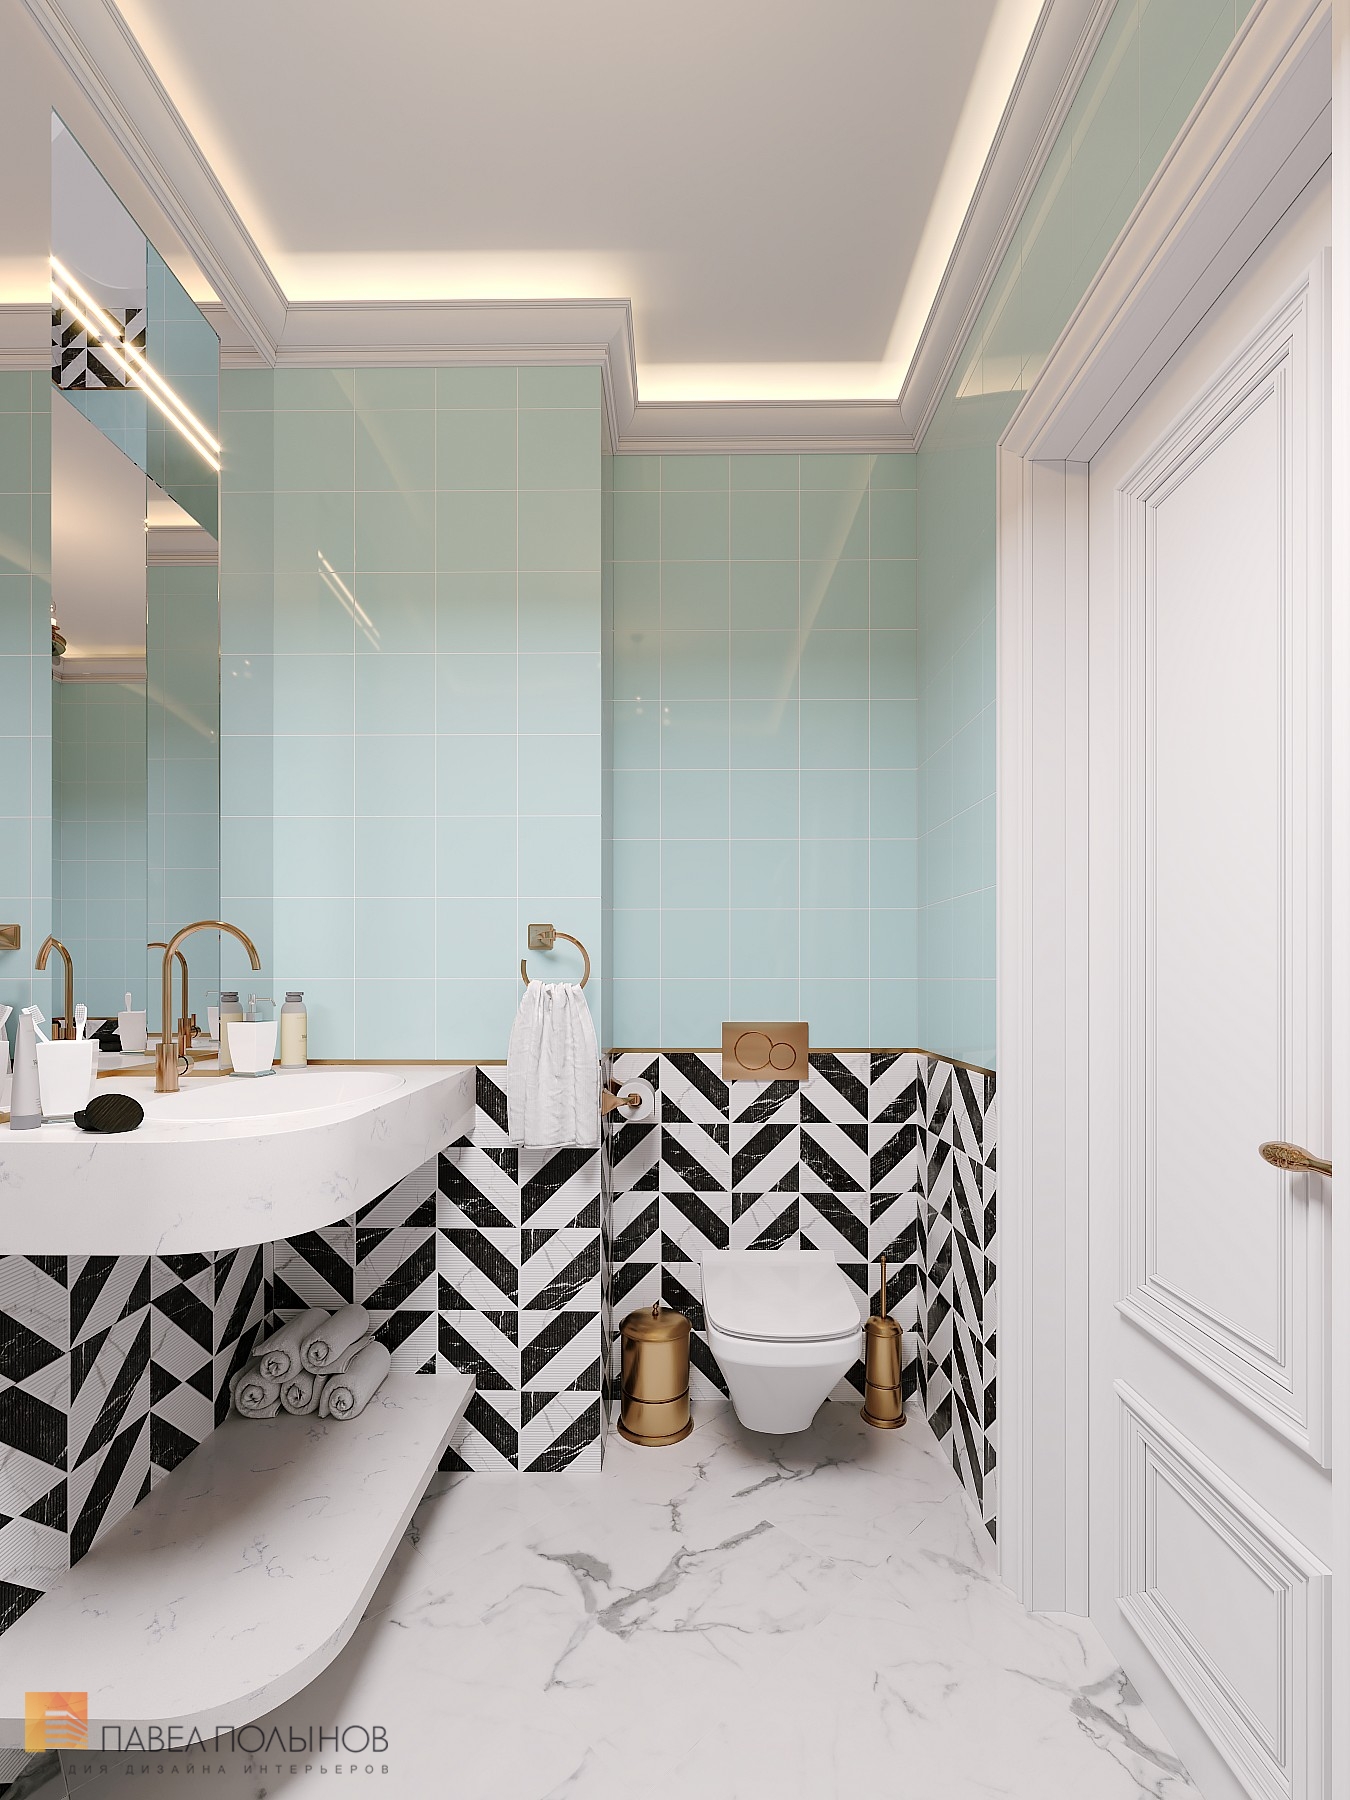 Фото дизайн ванной комнаты из проекта «Дизайн квартиры в ЖК «Три ветра», неоклассика, 88 кв.м.»